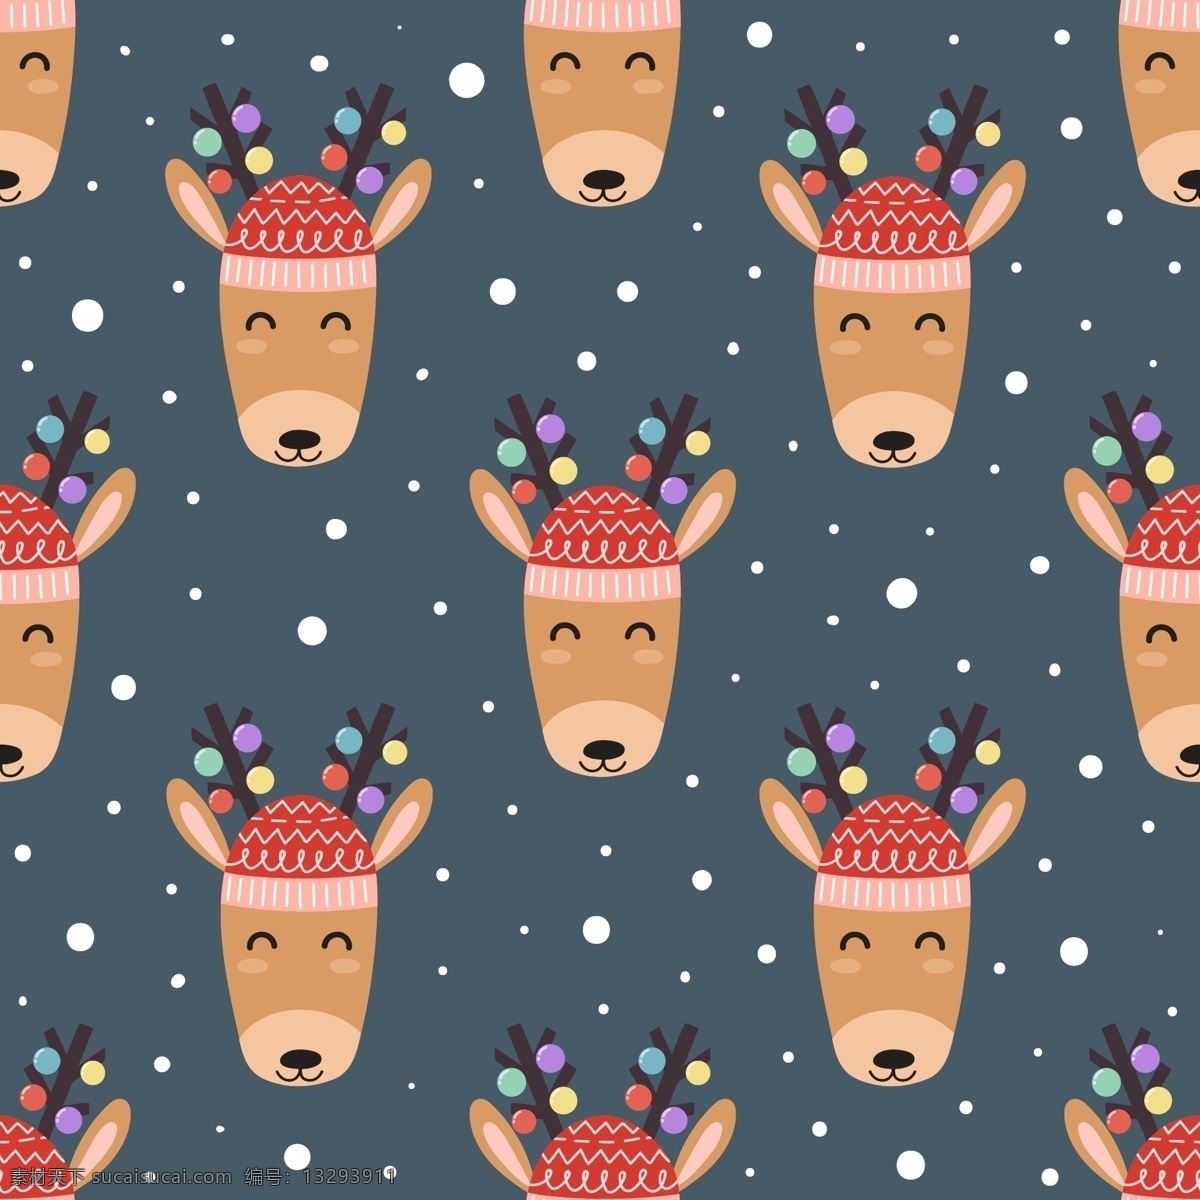 圣诞 帽 麋鹿 圣诞节 矢量 冬季 冬日 动物 黄色 节日 平面素材 设计素材 矢量素材 温暖 温馨